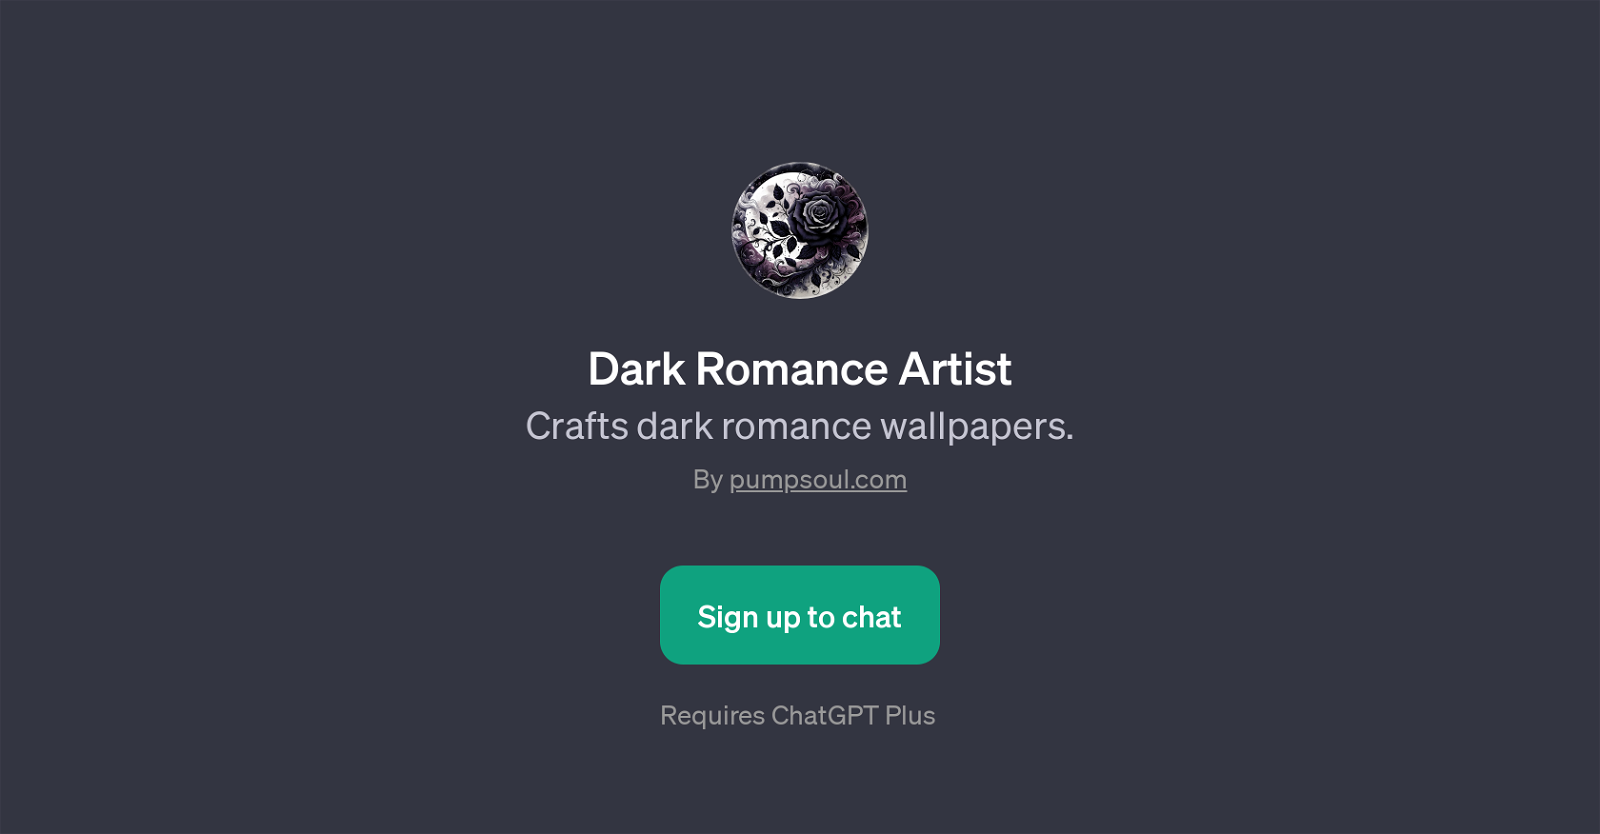 Dark Romance Artist website